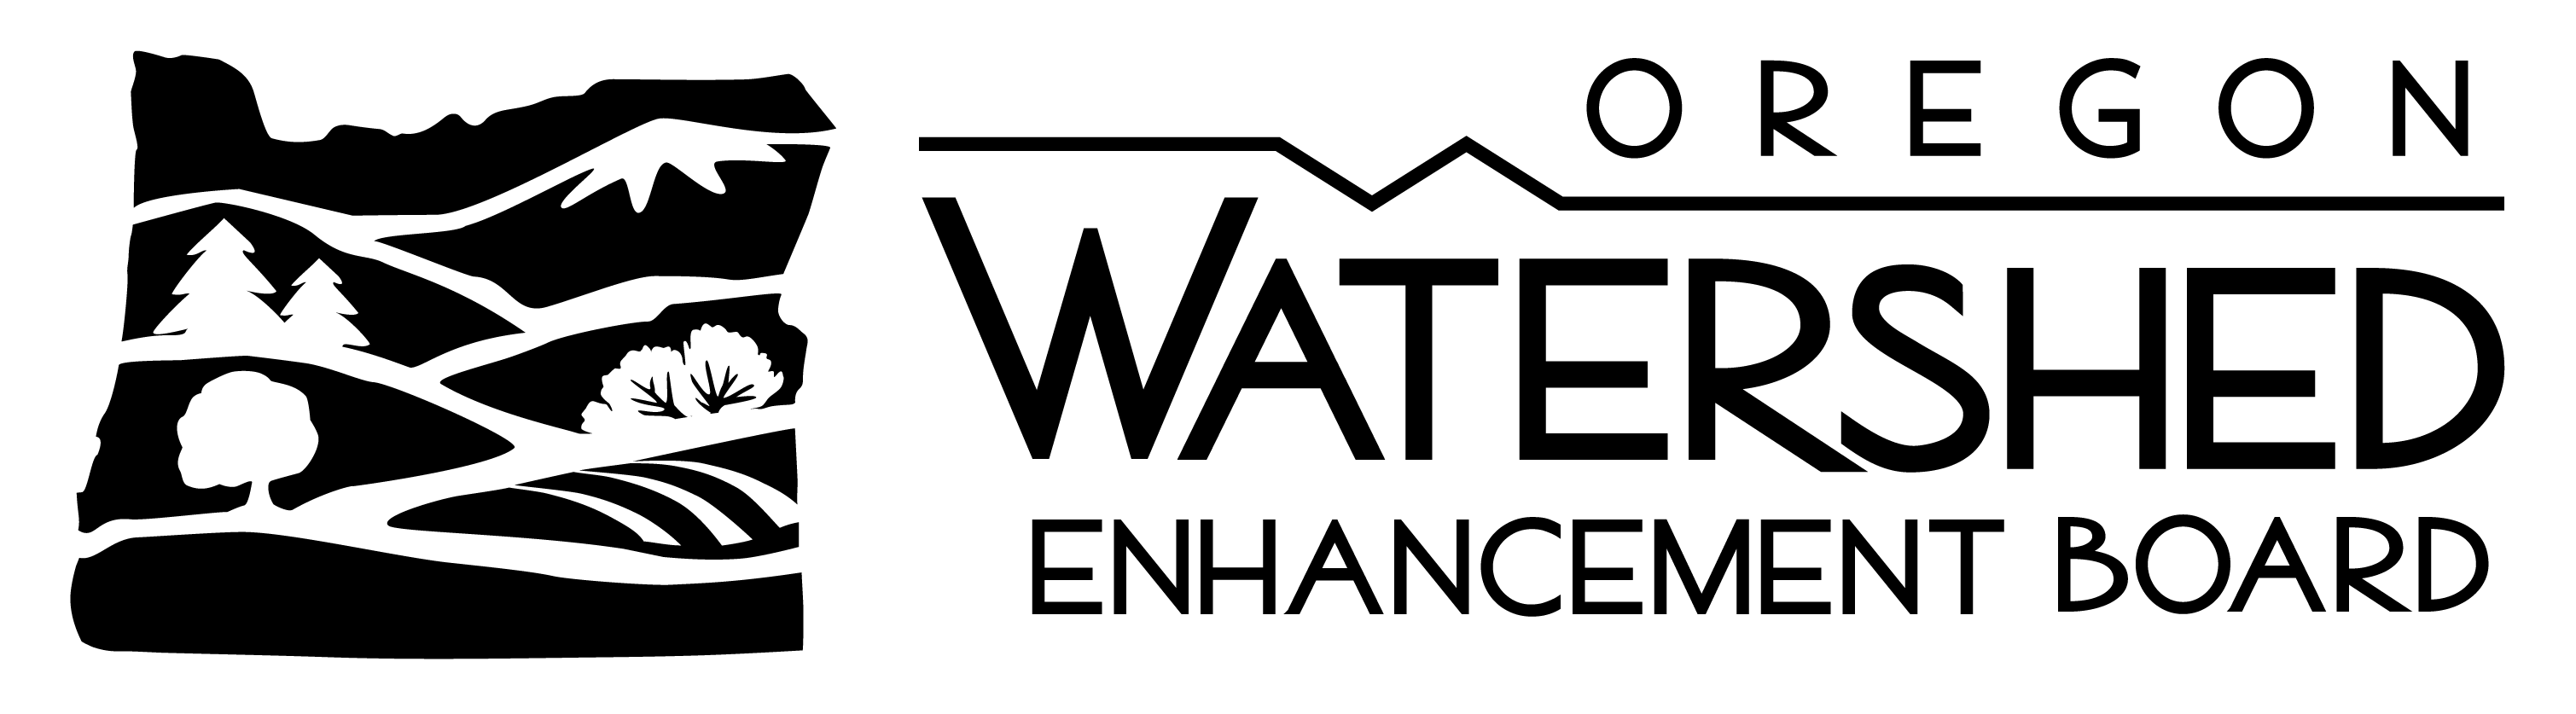 black horizontal transparent OWEB logo